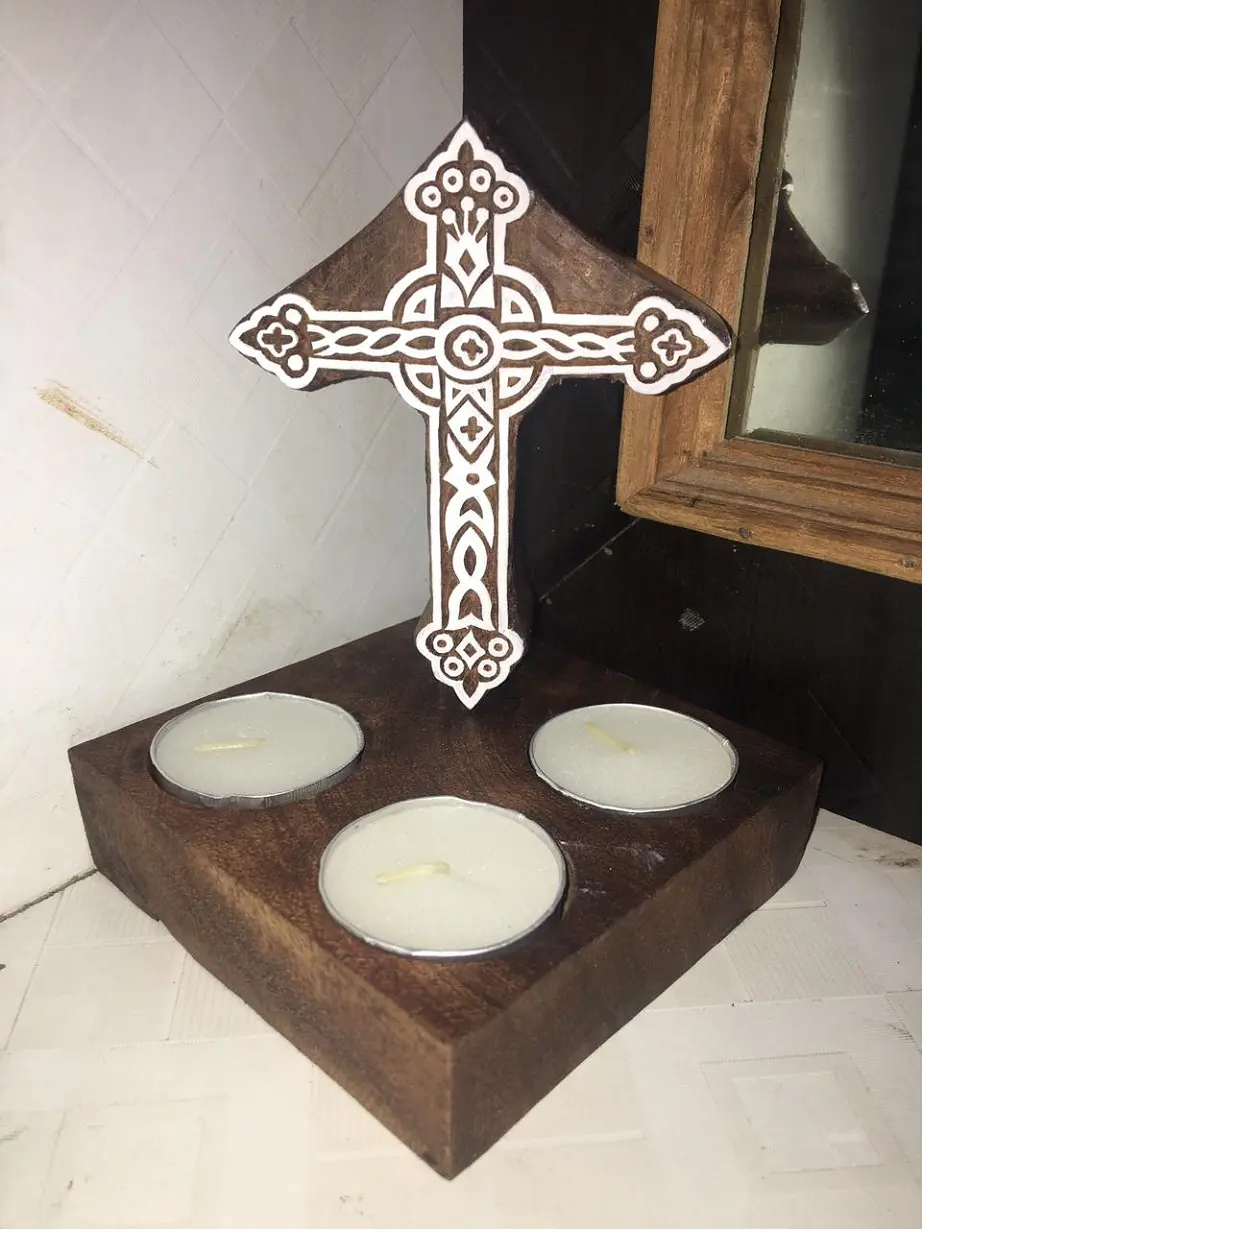 Tempat Lilin Kayu Dibuat Kustom dengan Ukiran Salib Ideal untuk Gereja dan Toko-toko Suci